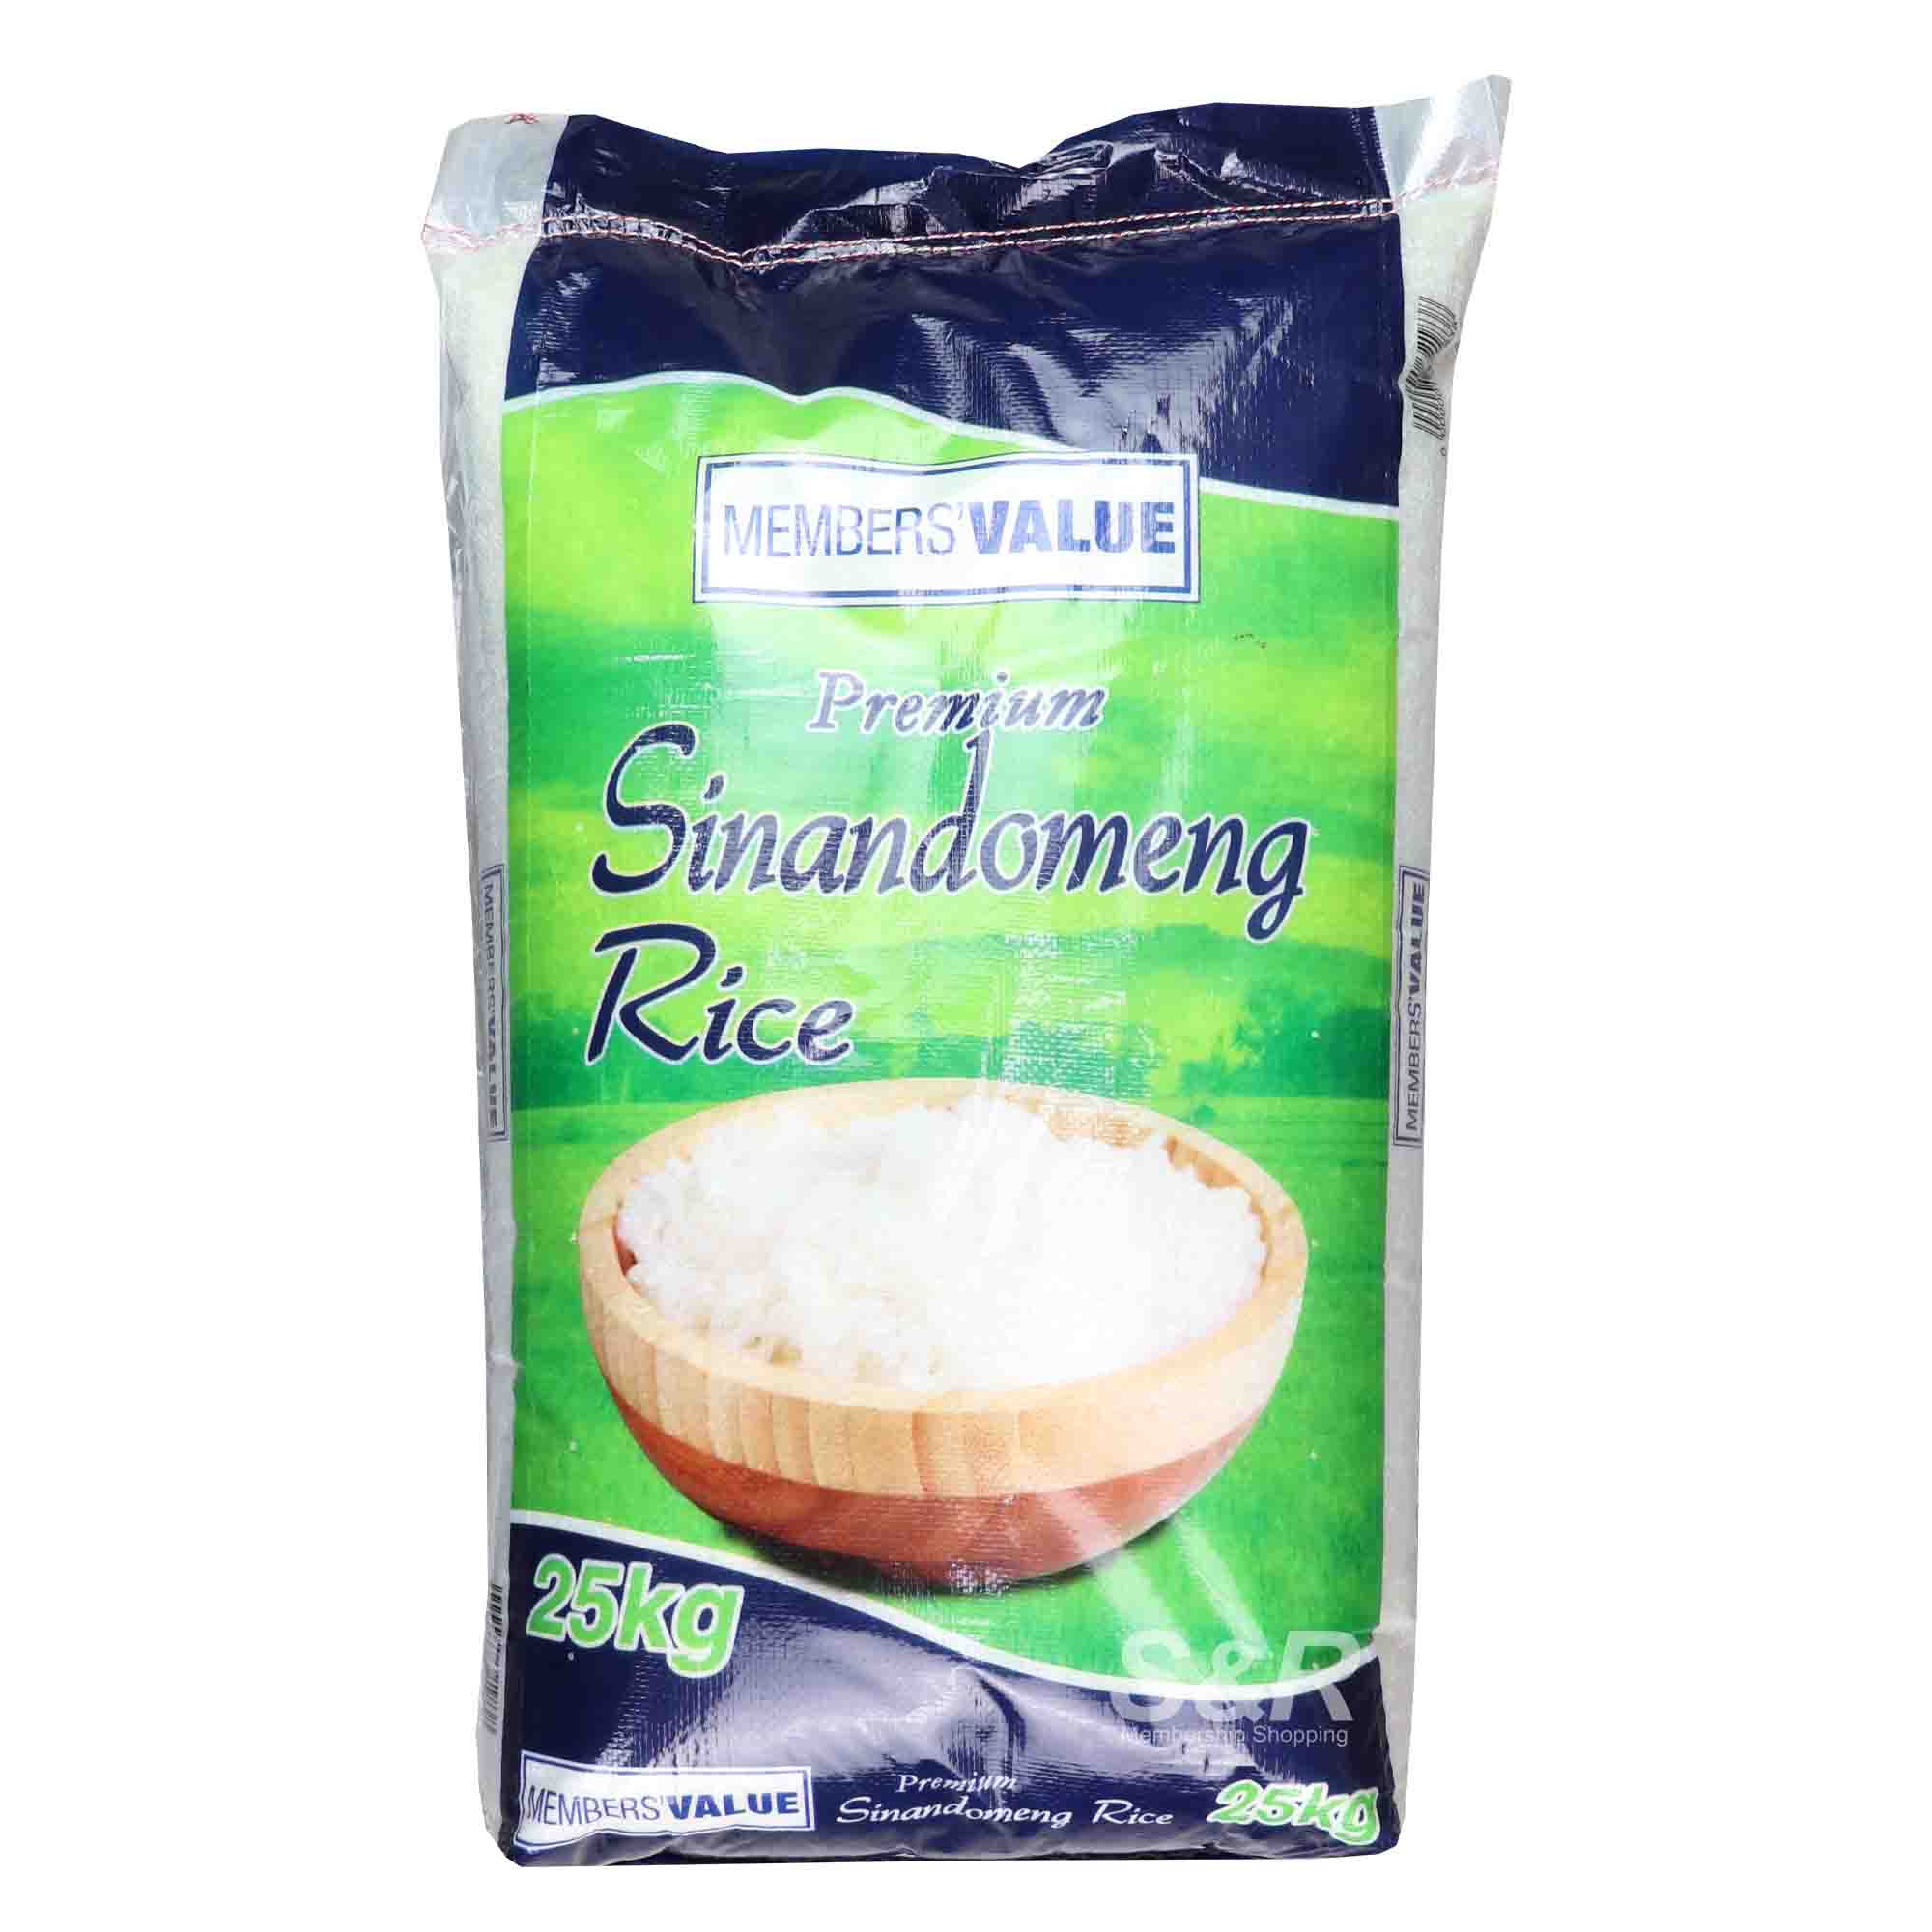 Members' Value Sinandomeng Premium Rice 25kg